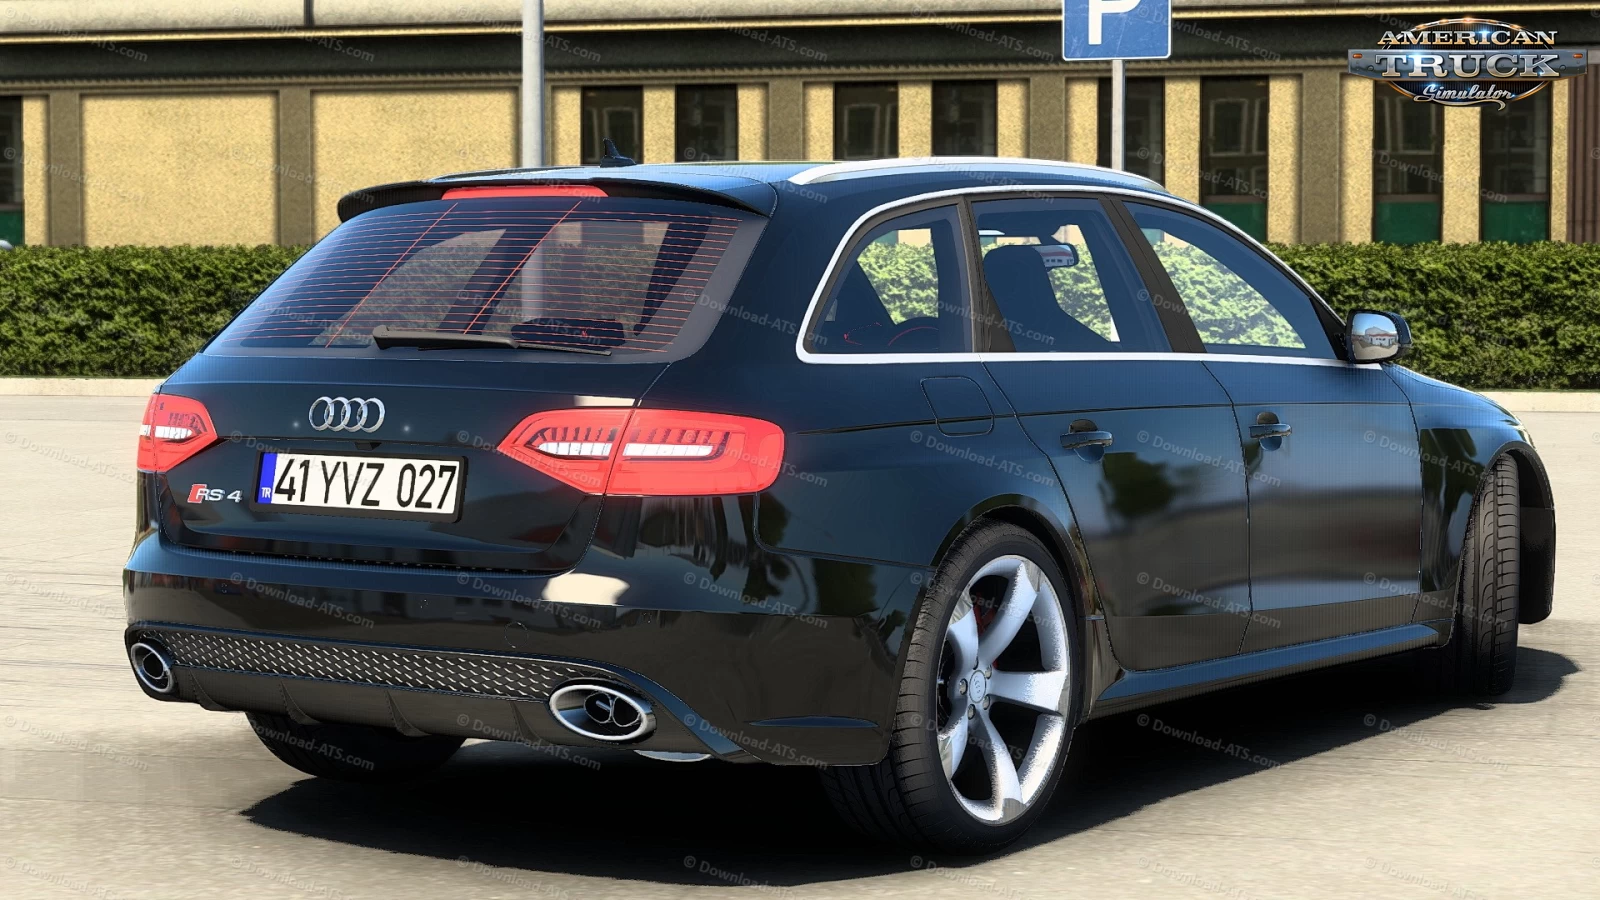 Audi RS4 Avant 2013 + Interior v1.1 (1.45.x) for ATS